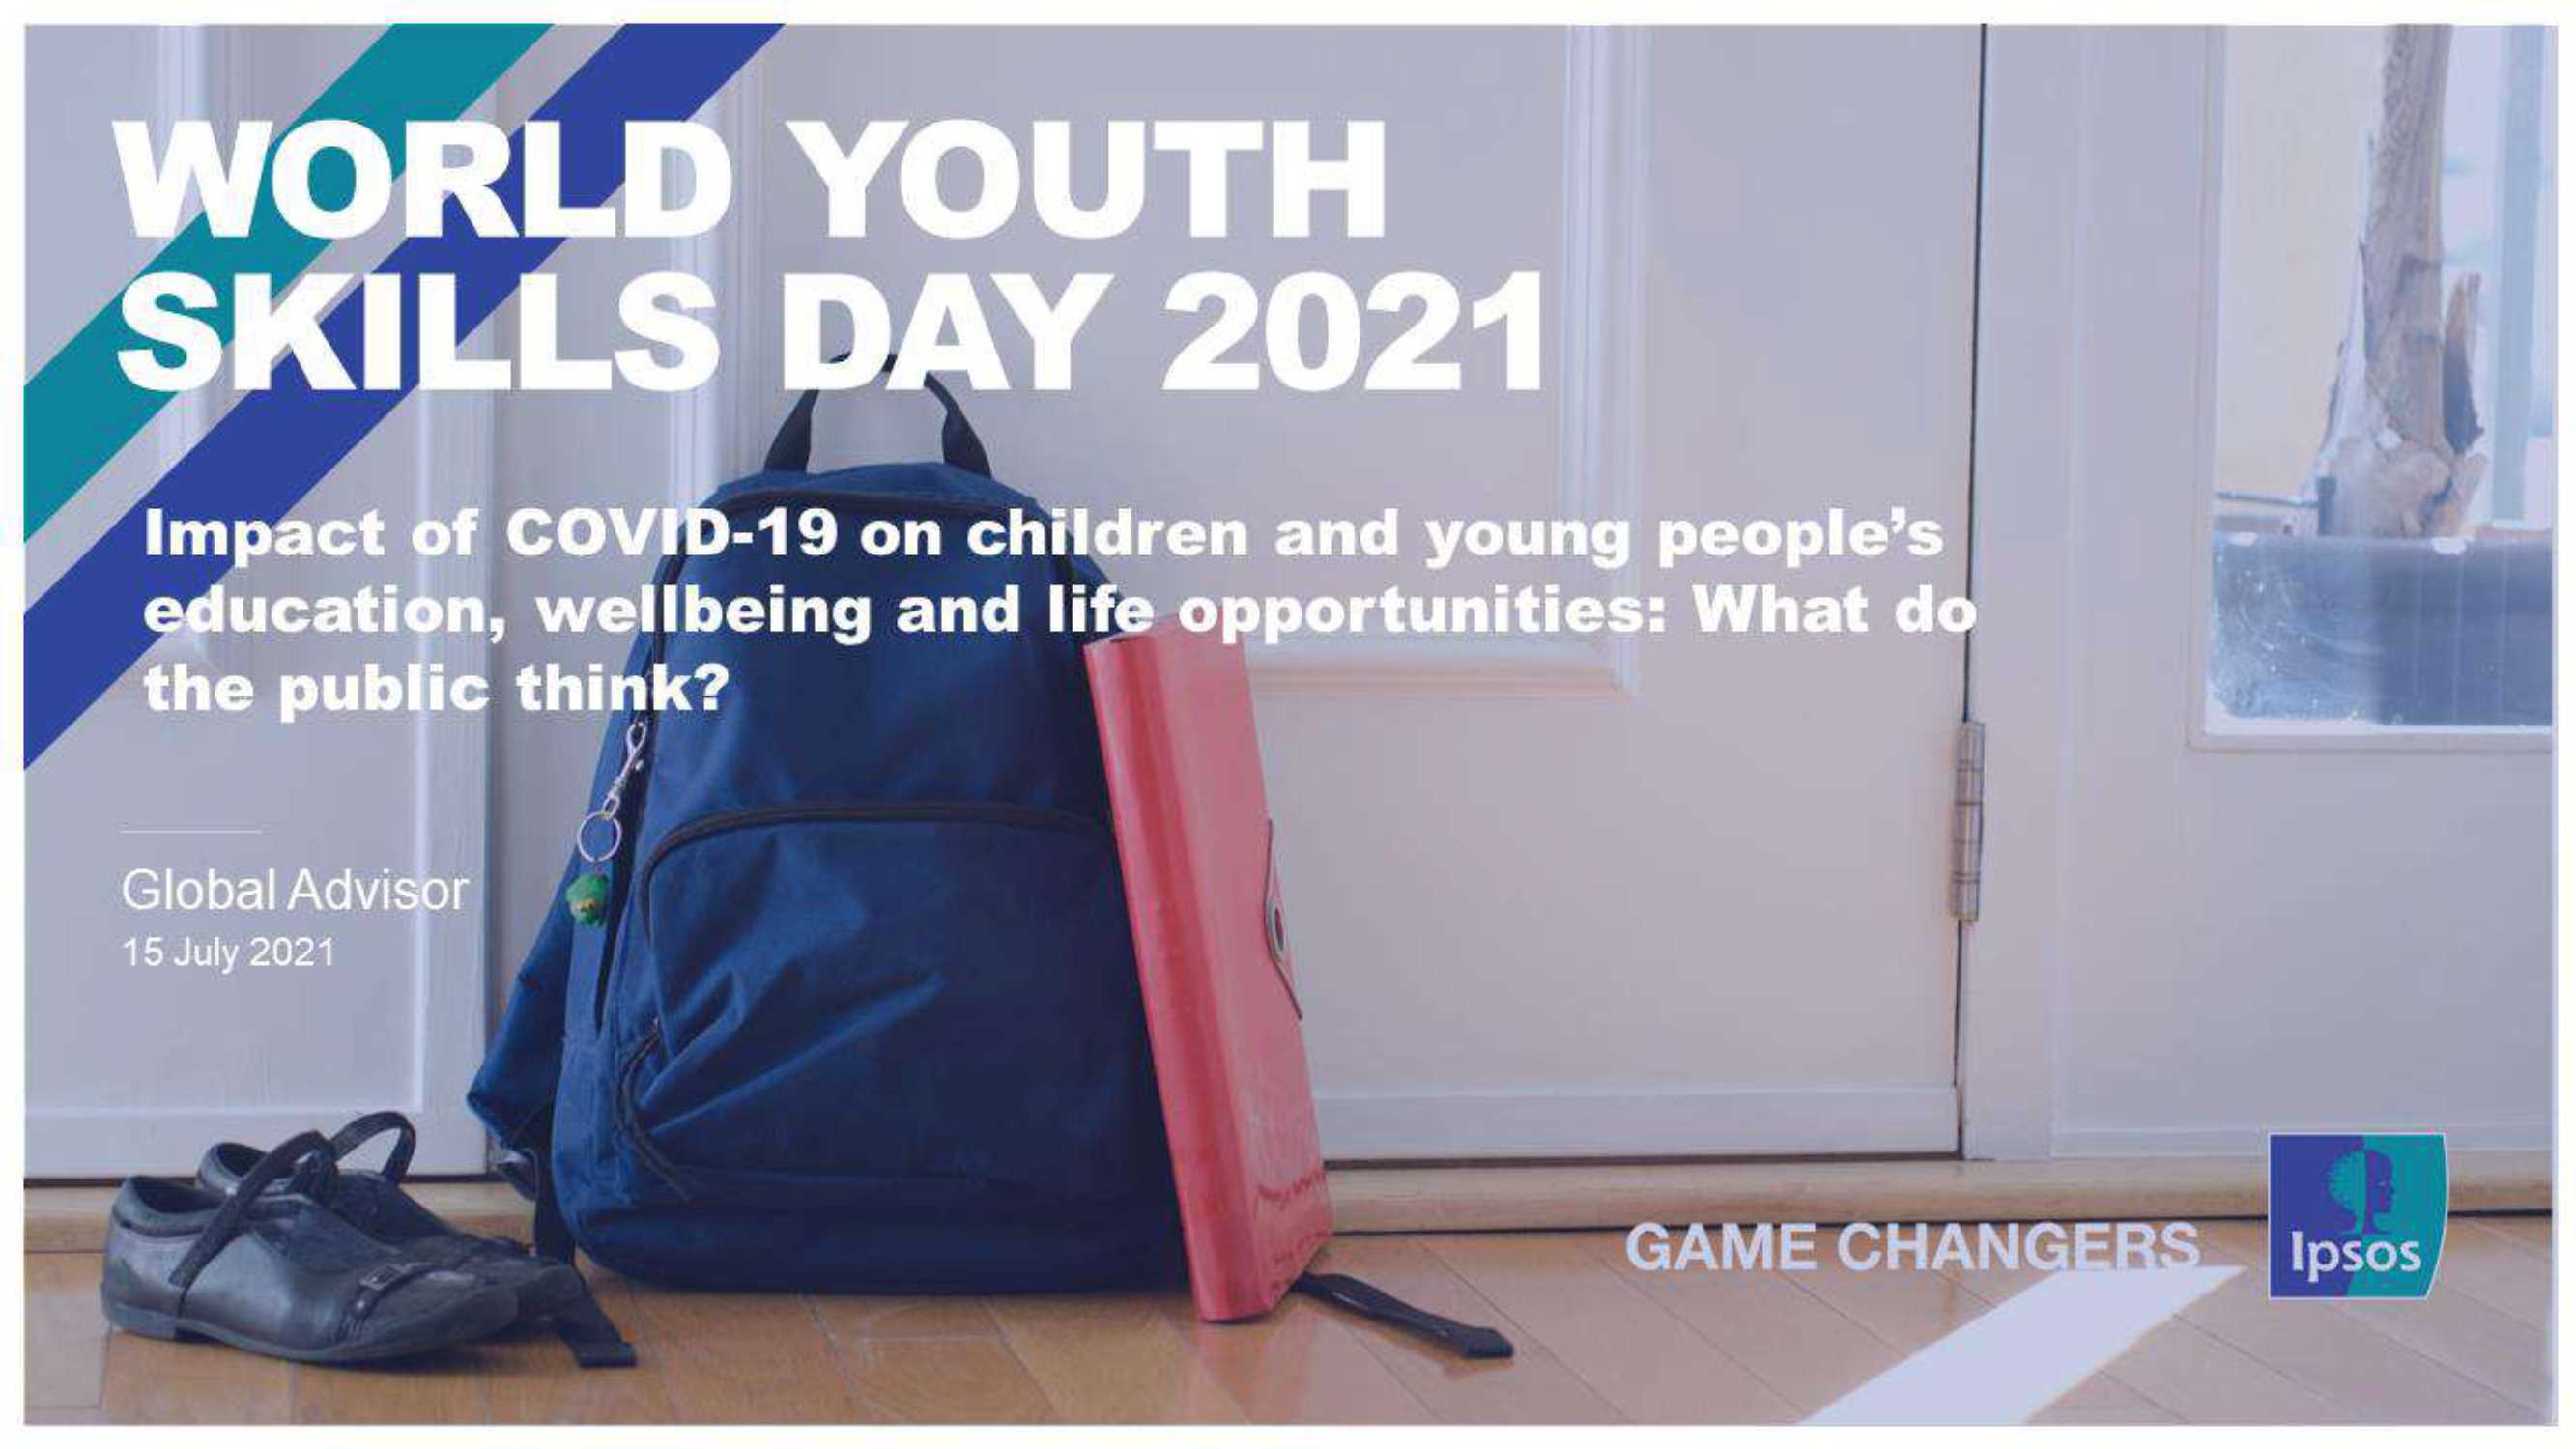 益普索-2021年世界青年技能日-心理健康和幸福状况恶化被视为新冠疫情流行病对儿童和青年的长期后果（英）-2021.07-32页